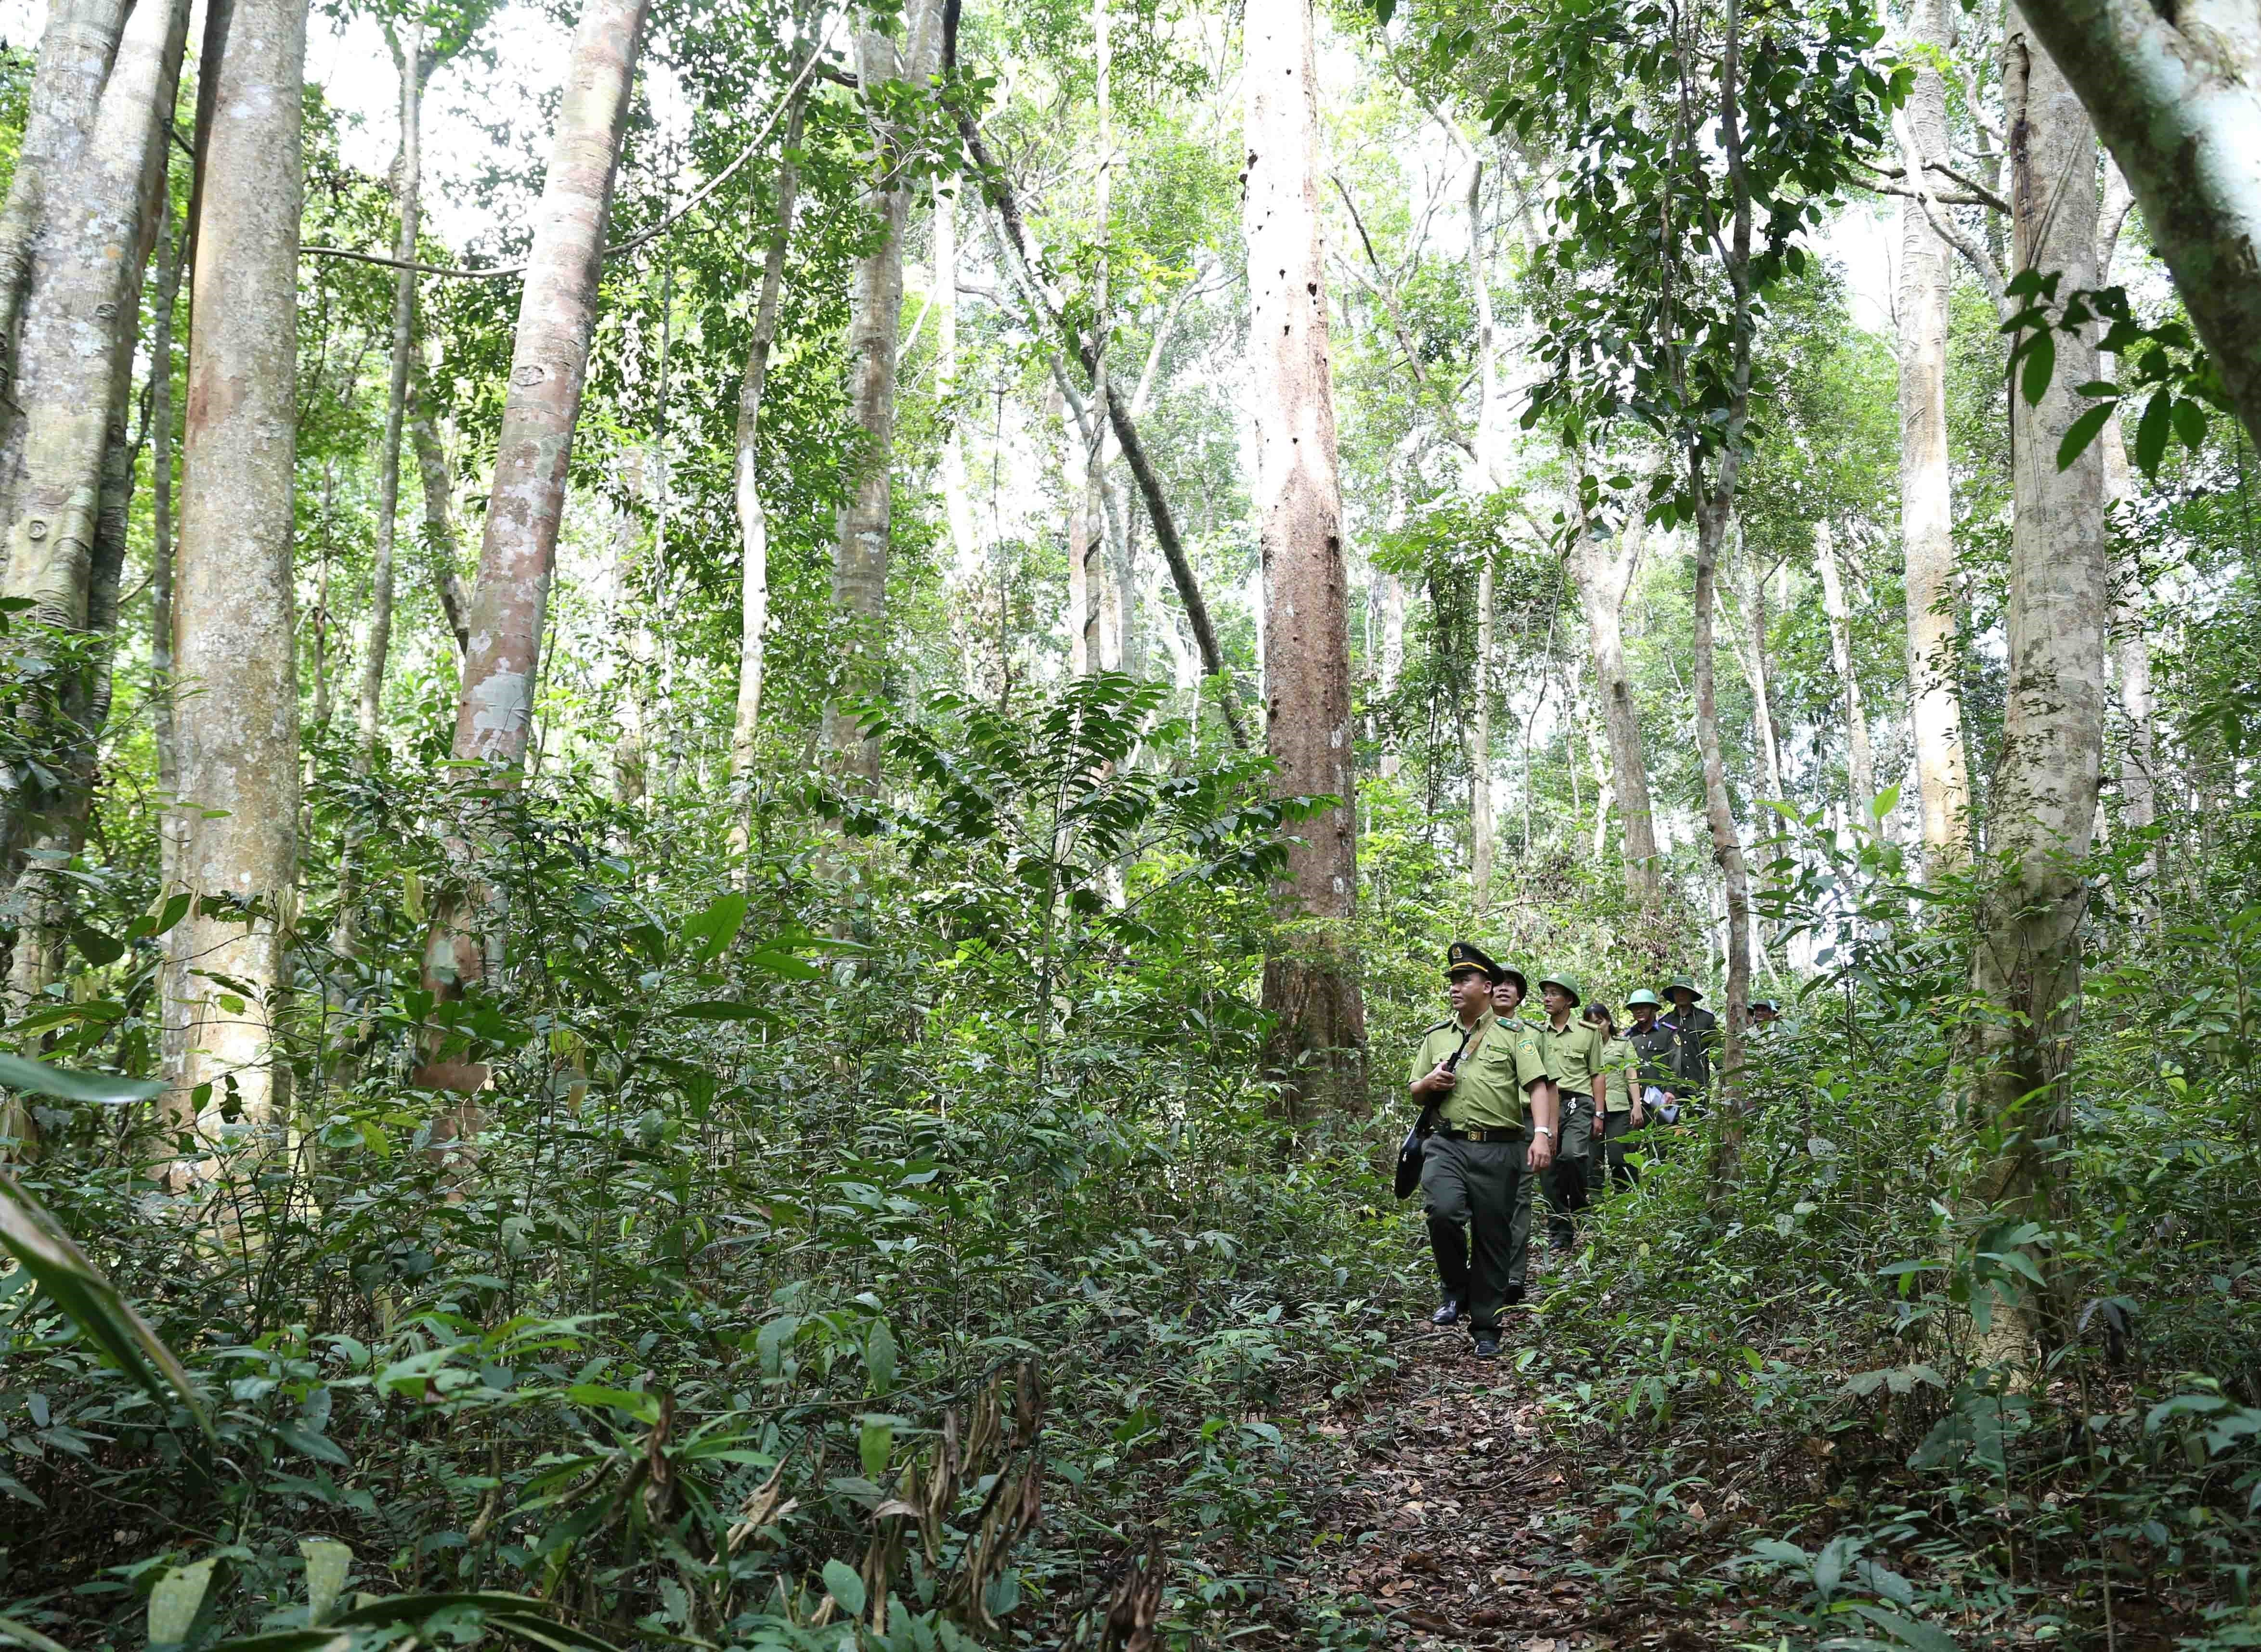 Lực lượng kiểm lâm phối hợp với Ban Quản lý rừng và Công ty Lâm nghiệp trên địa bàn huyện Vĩnh Thạnh, tỉnh Bình Định, triển khai công tác đi tuần tra bảo vệ rừng nguyên sinh trên địa bàn huyện quản lý. (Ảnh: Vũ Sinh/TTXVN)